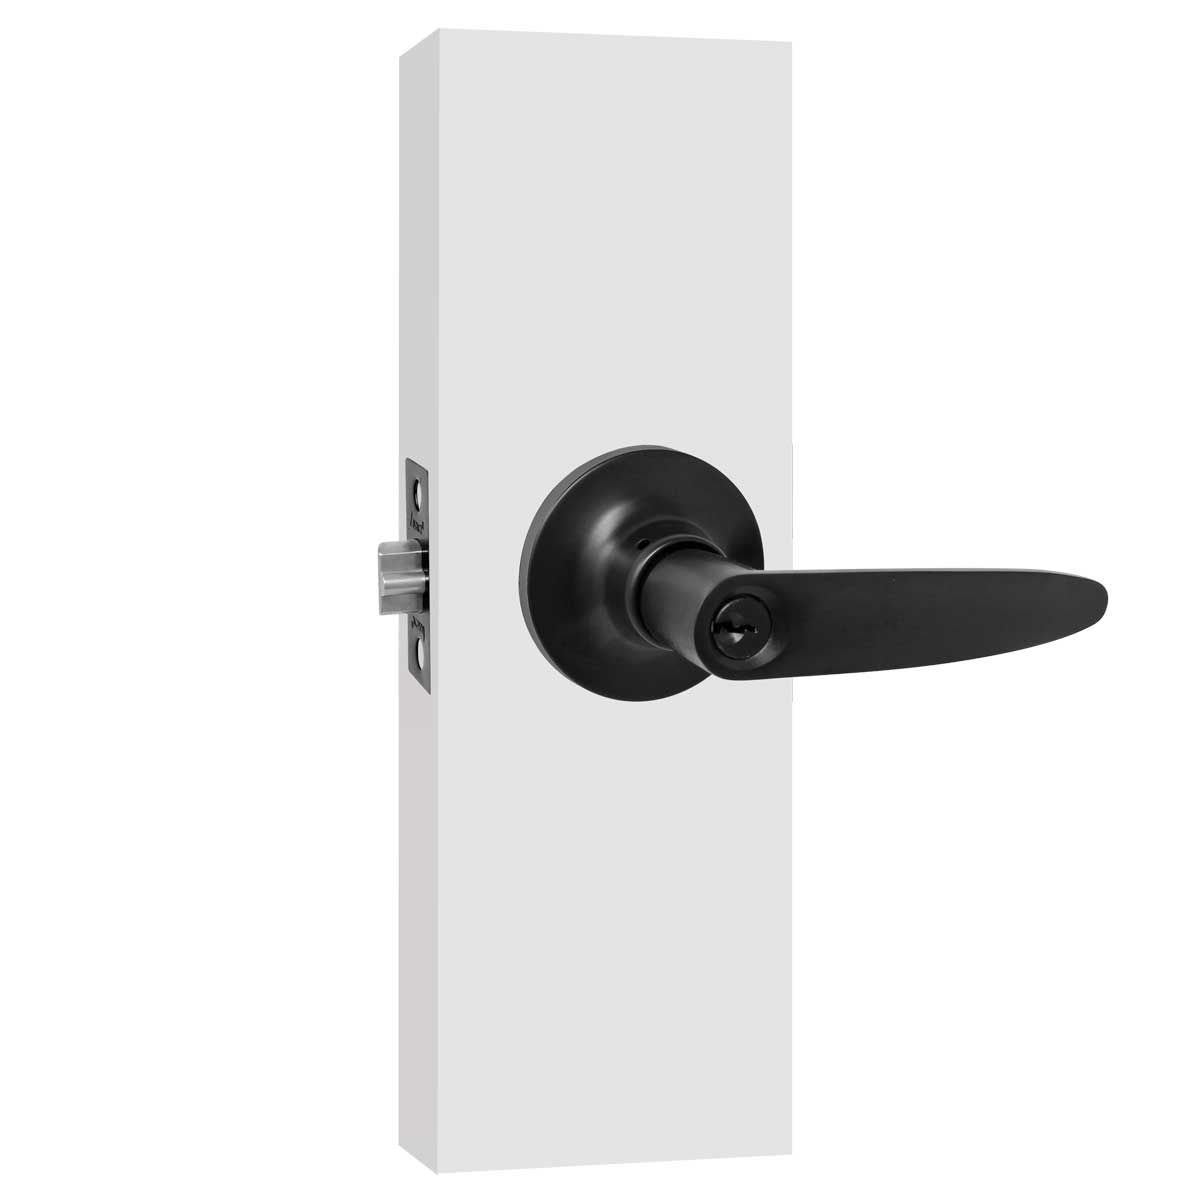 Cerradura estándar, buzón vertical, 2 llaves